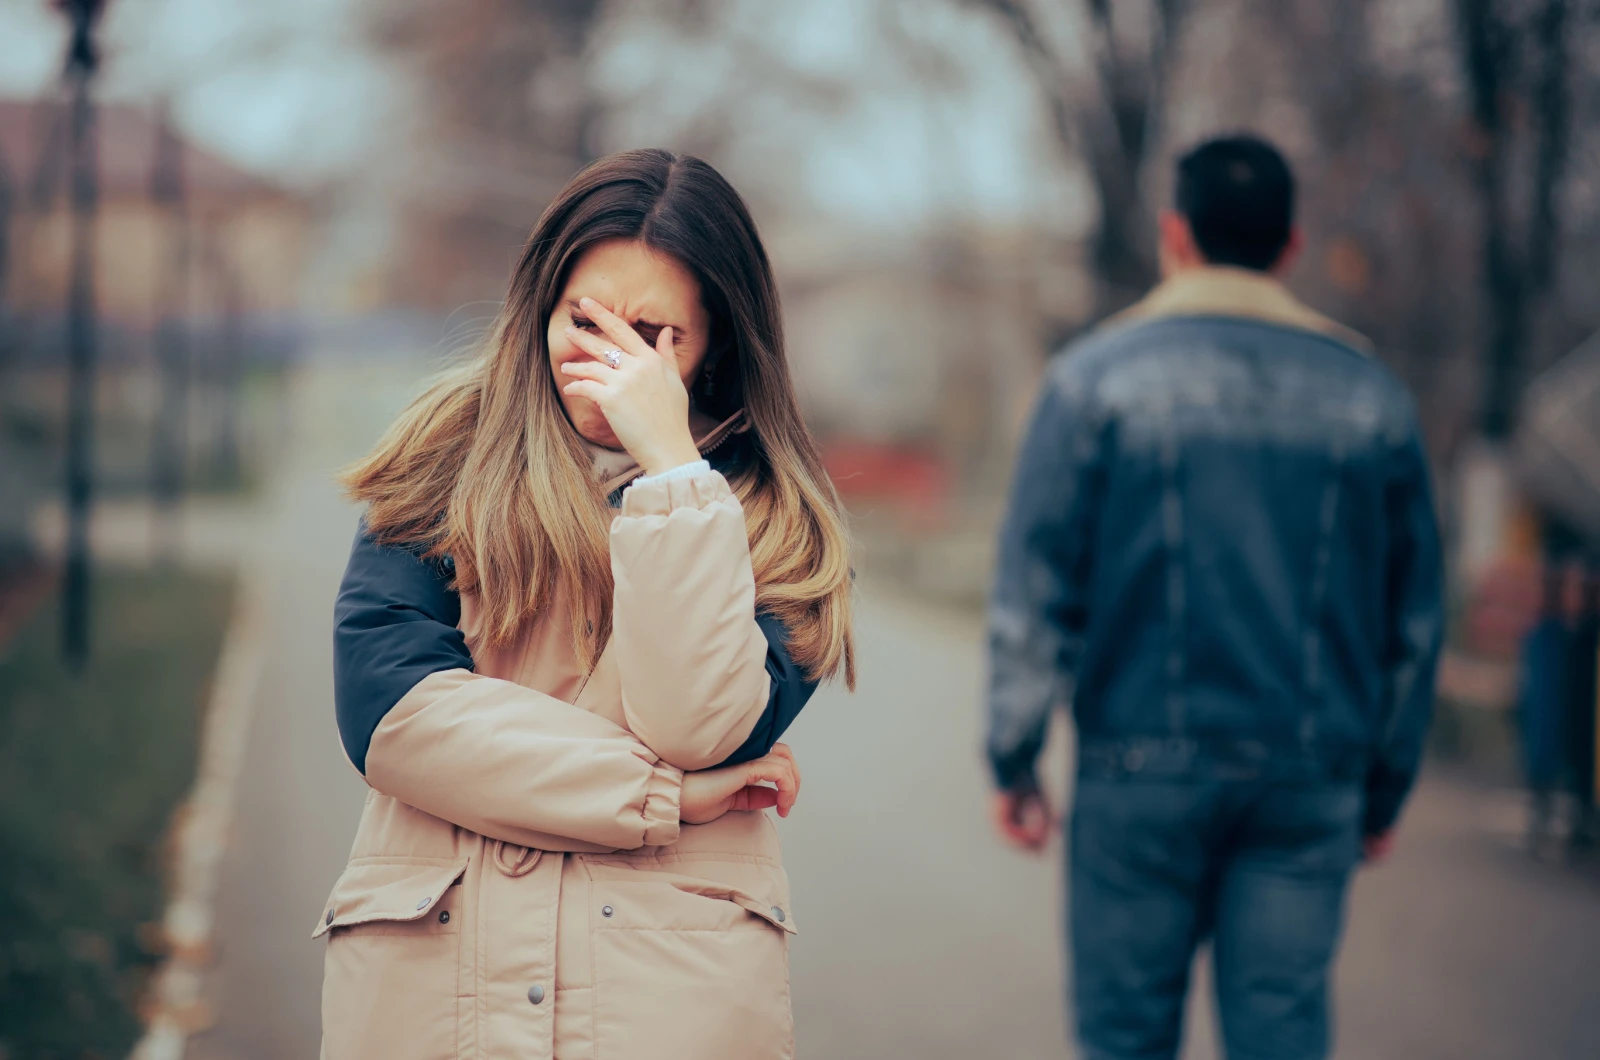 Traurige, verärgerte Frau weint nach einer schmerzhaften Trennung